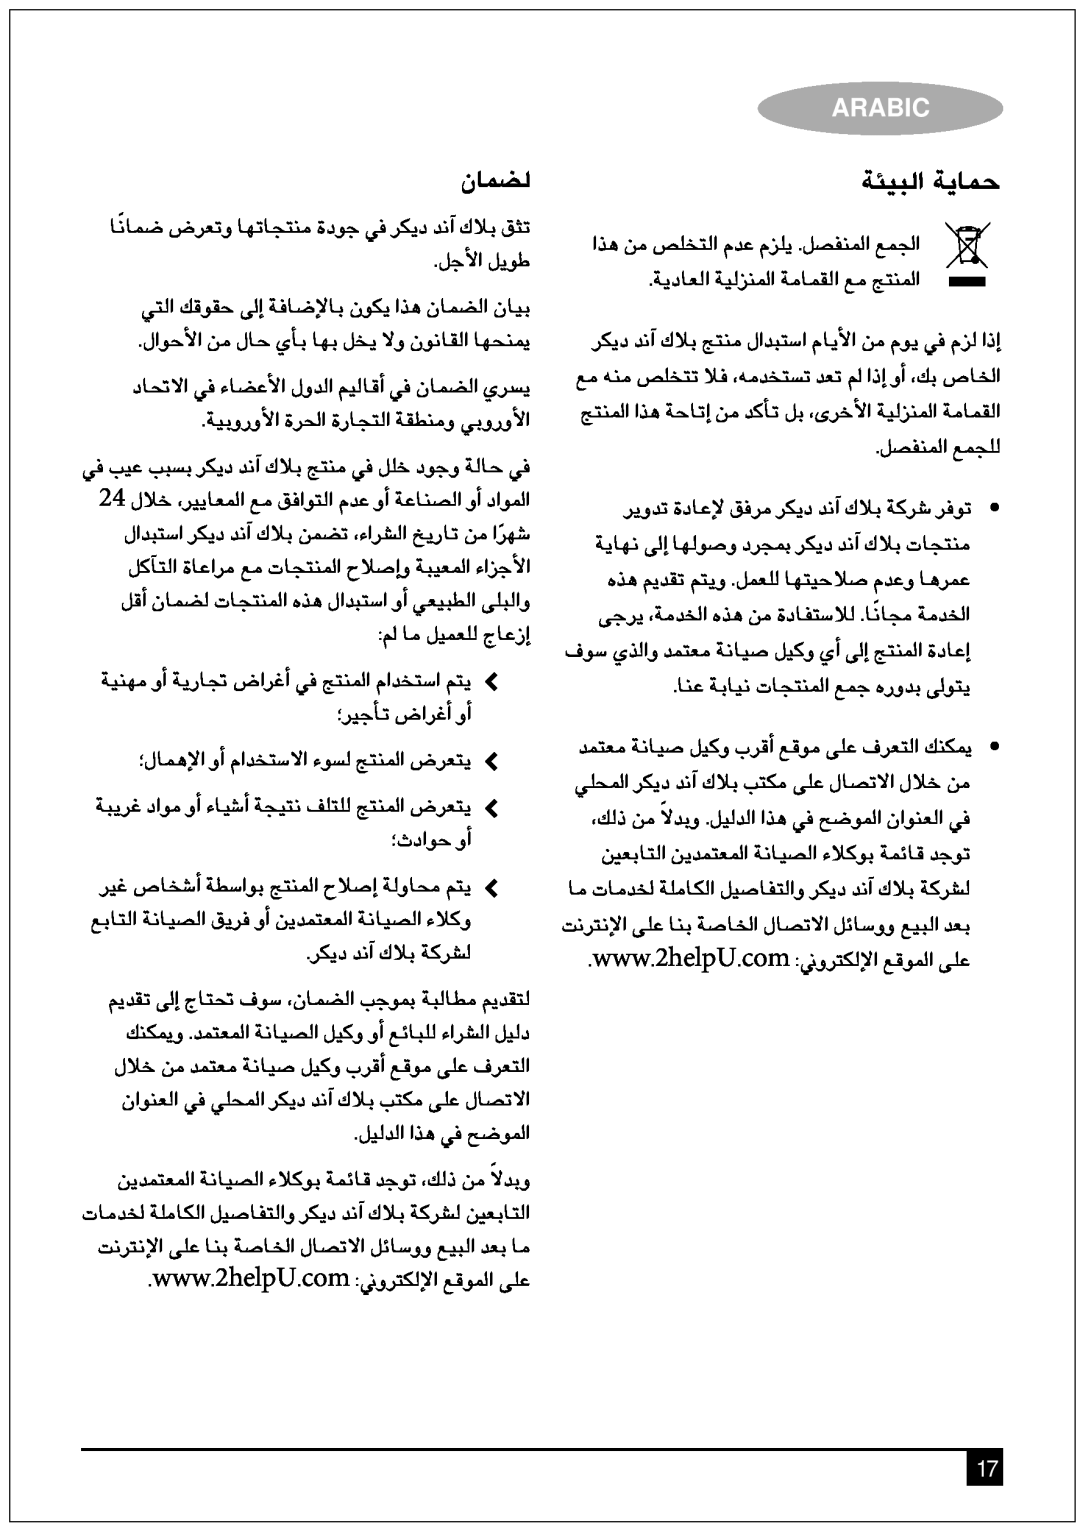 Black & Decker DCM90 manual ‡€Ç„dG ‡jƒ»M, Àƒ»¡ d, Arabic 